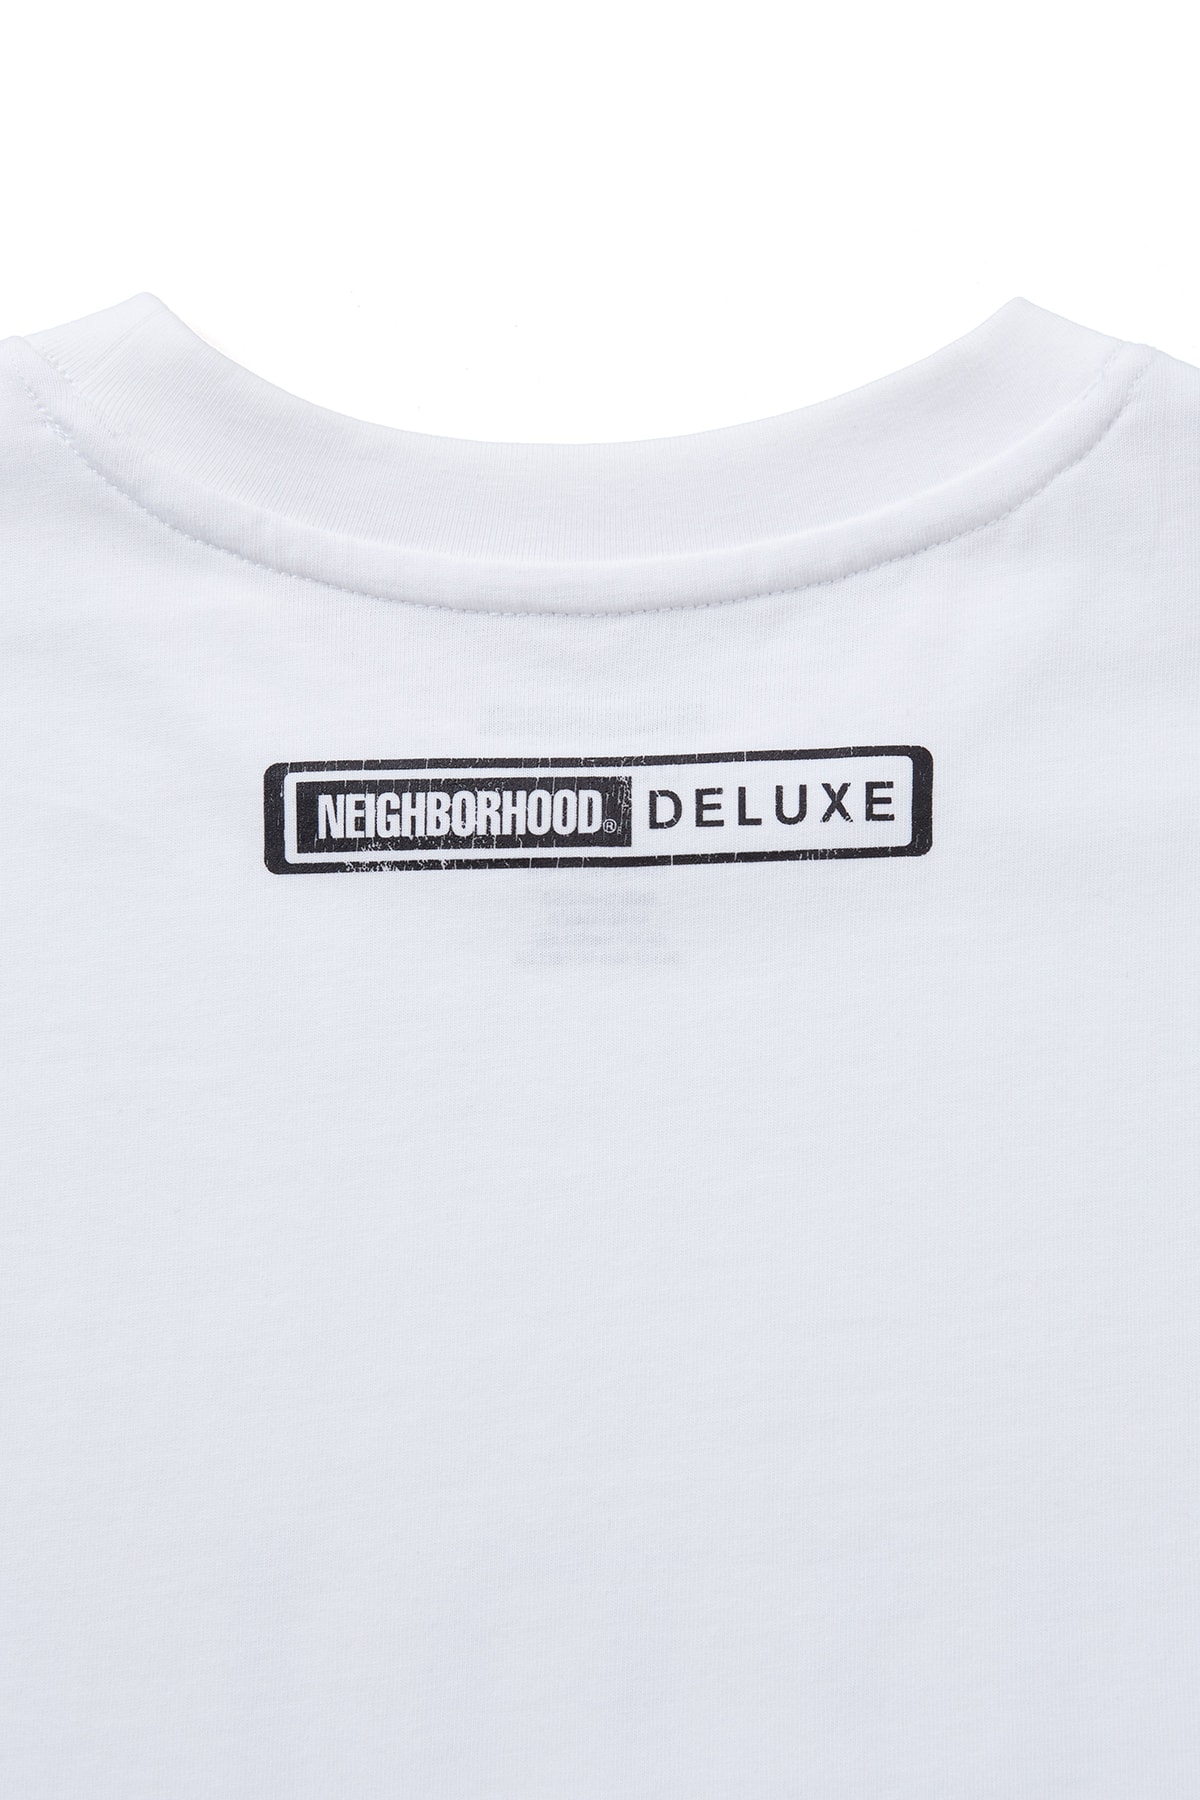 ネイバーフッド x デラックスによる初のコラボコレクションが発売 NEIGHBORHOOD x DELUXE first collab collection release info